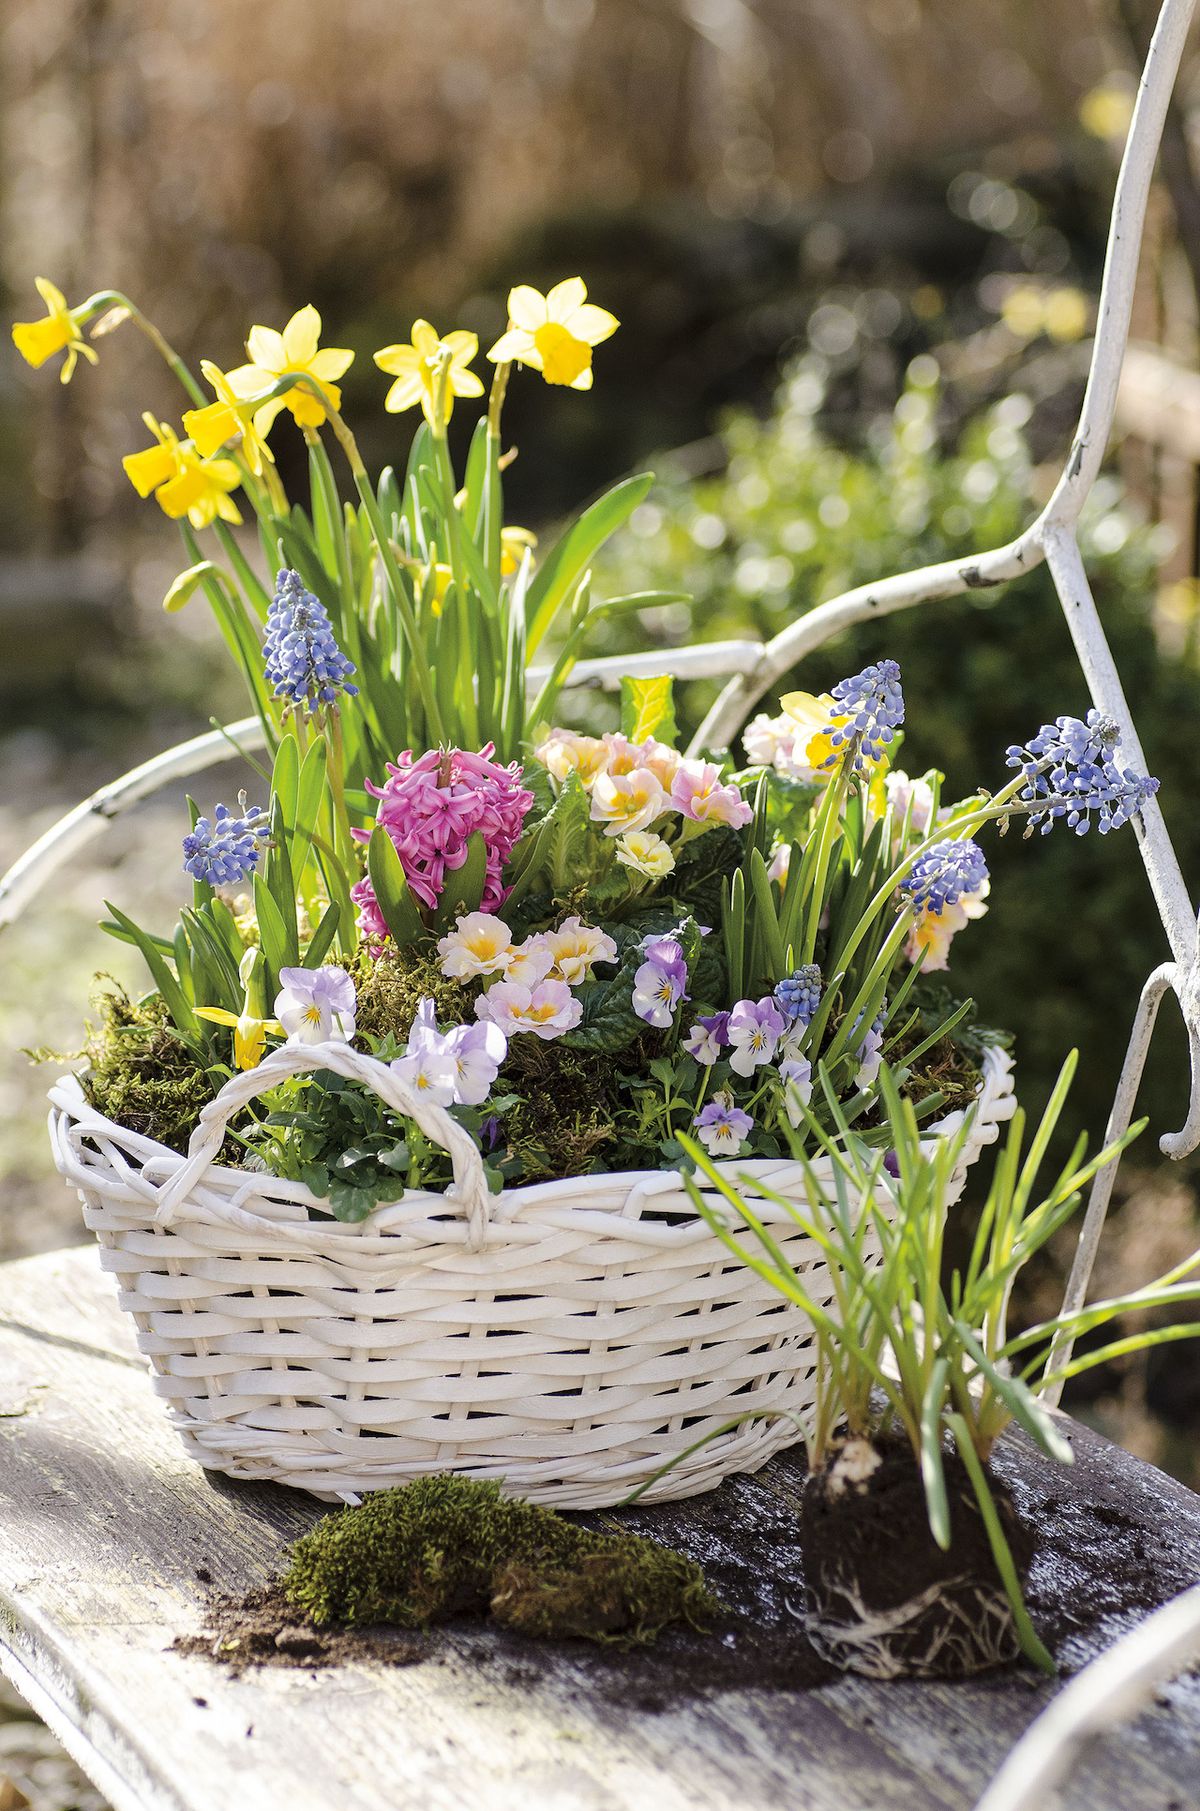 Košík plný pokladů. V jarním spolku kvetou prvosenky, modřence, violky a hyacinty s narcisy. Prostor mezi nimi vyplňuje čerstvý mech.